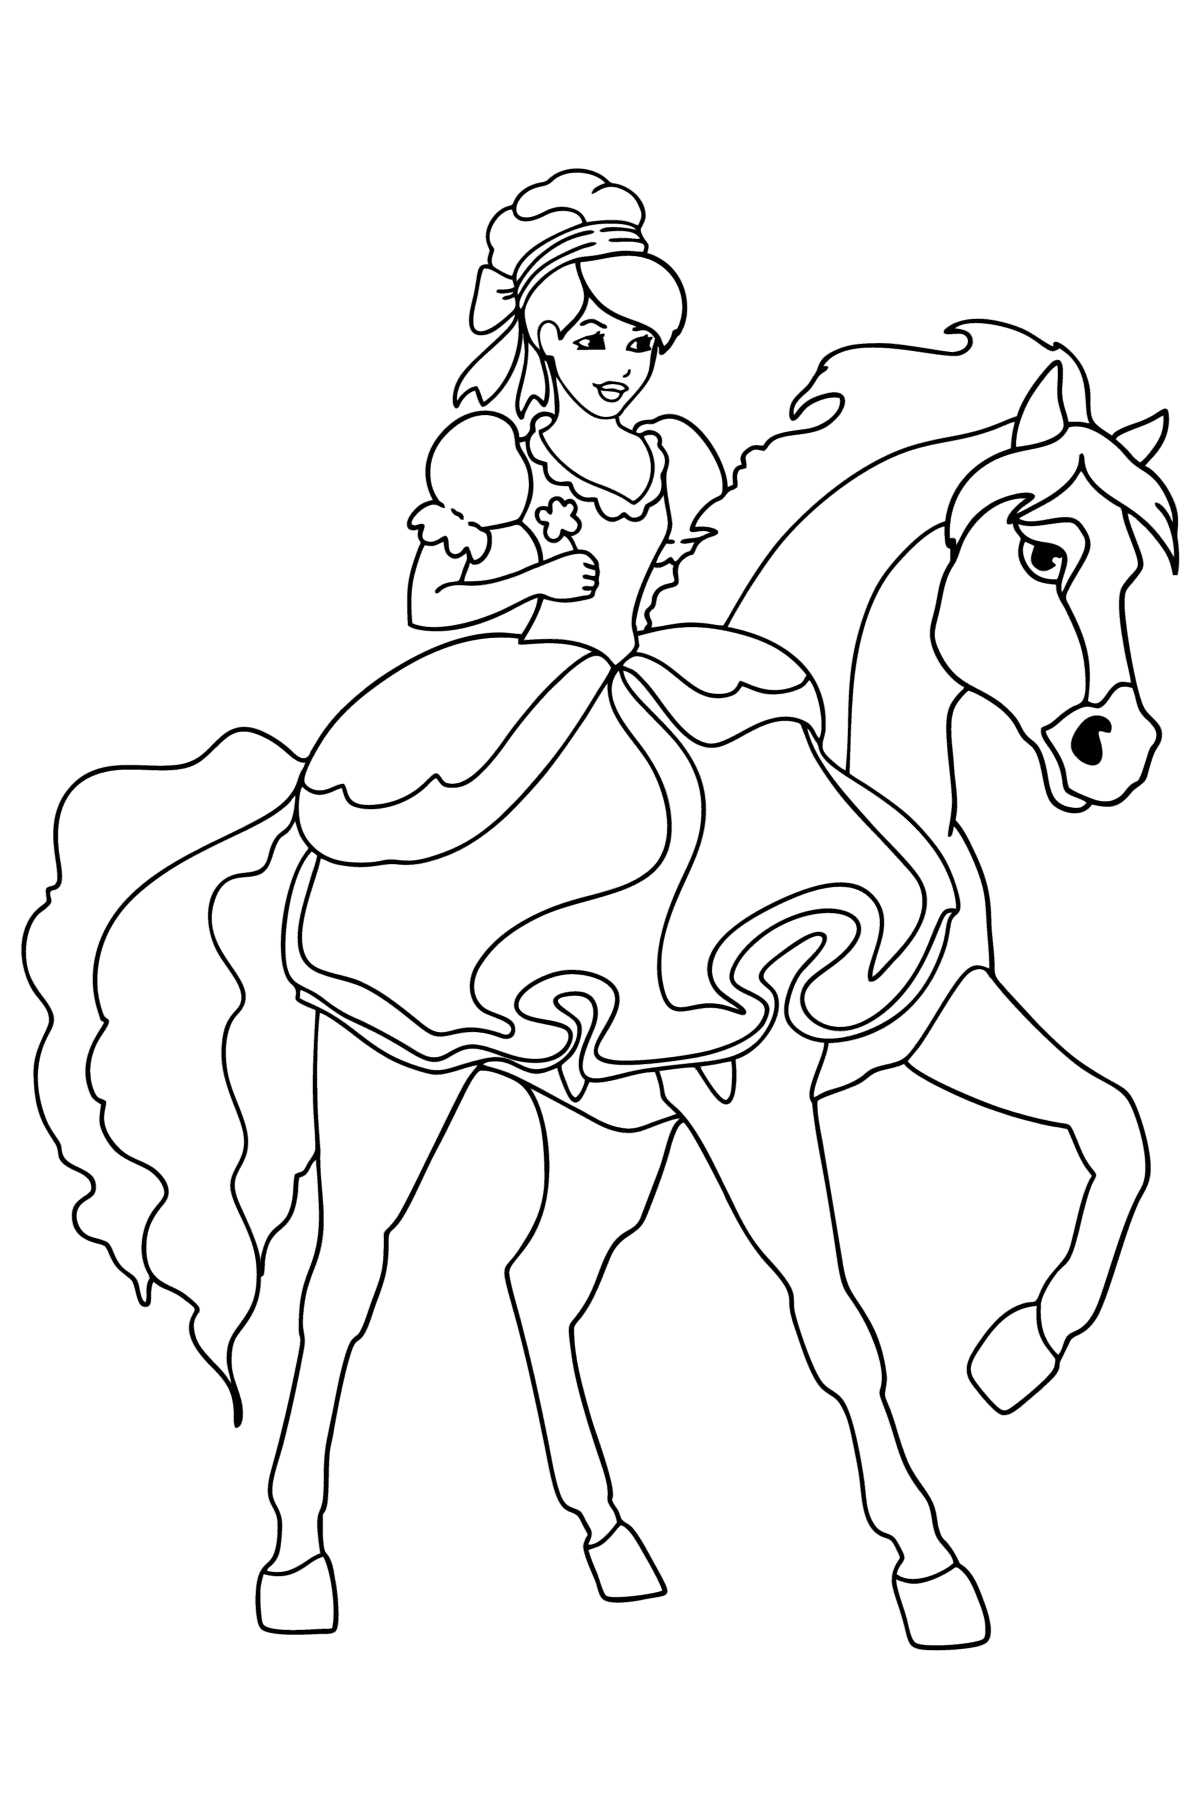 Boyama sayfası Atlı prenses - Boyamalar çocuklar için